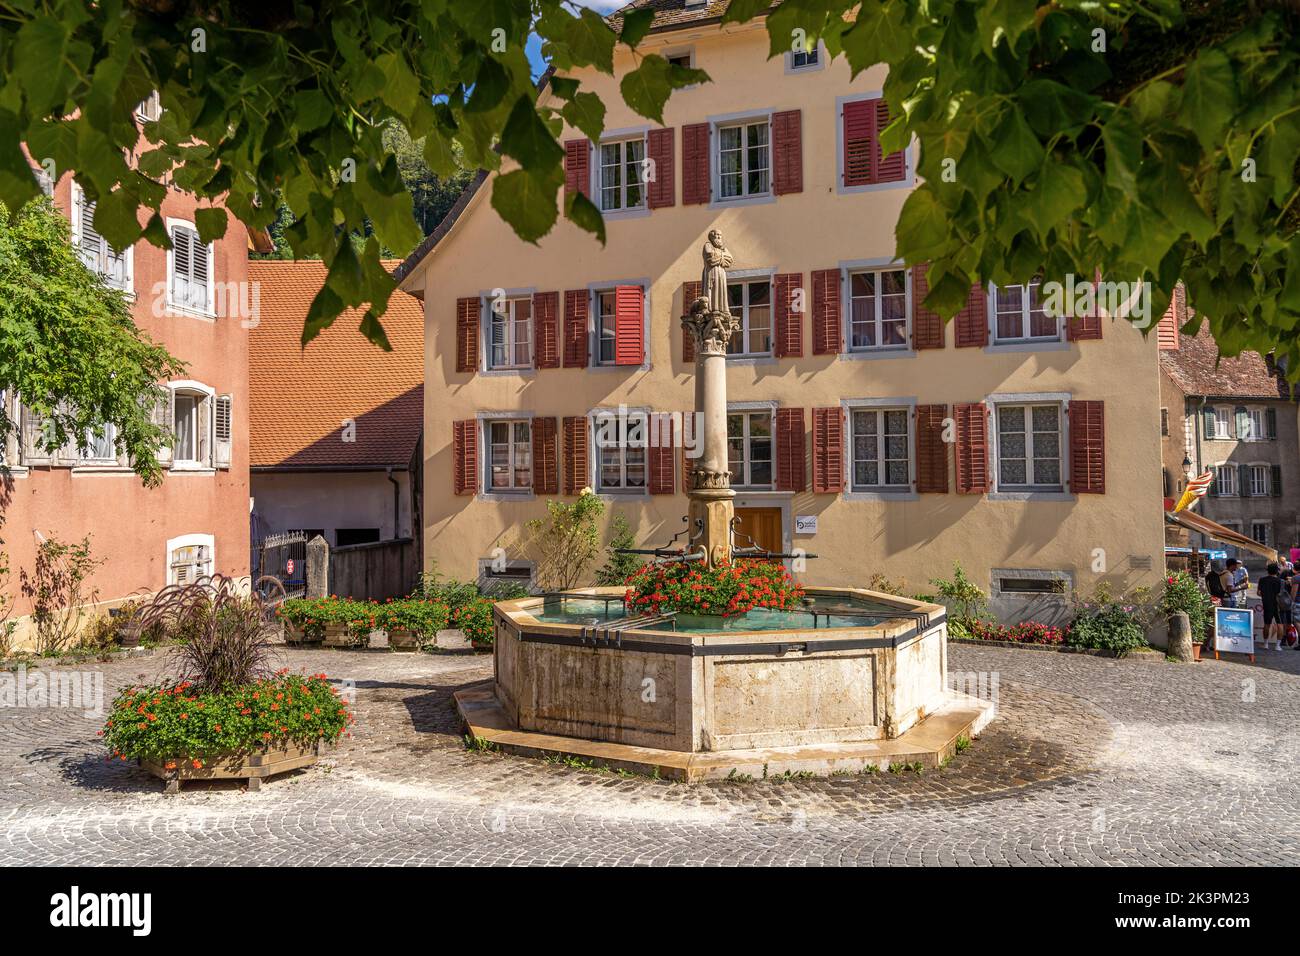 Der Brunnen Fontaine du Mai in der historischen Altstadt von Saint-Ursanne, Schweiz, Europa | Fontaine du Mai Brunnen in der historischen Altstadt von S Stockfoto